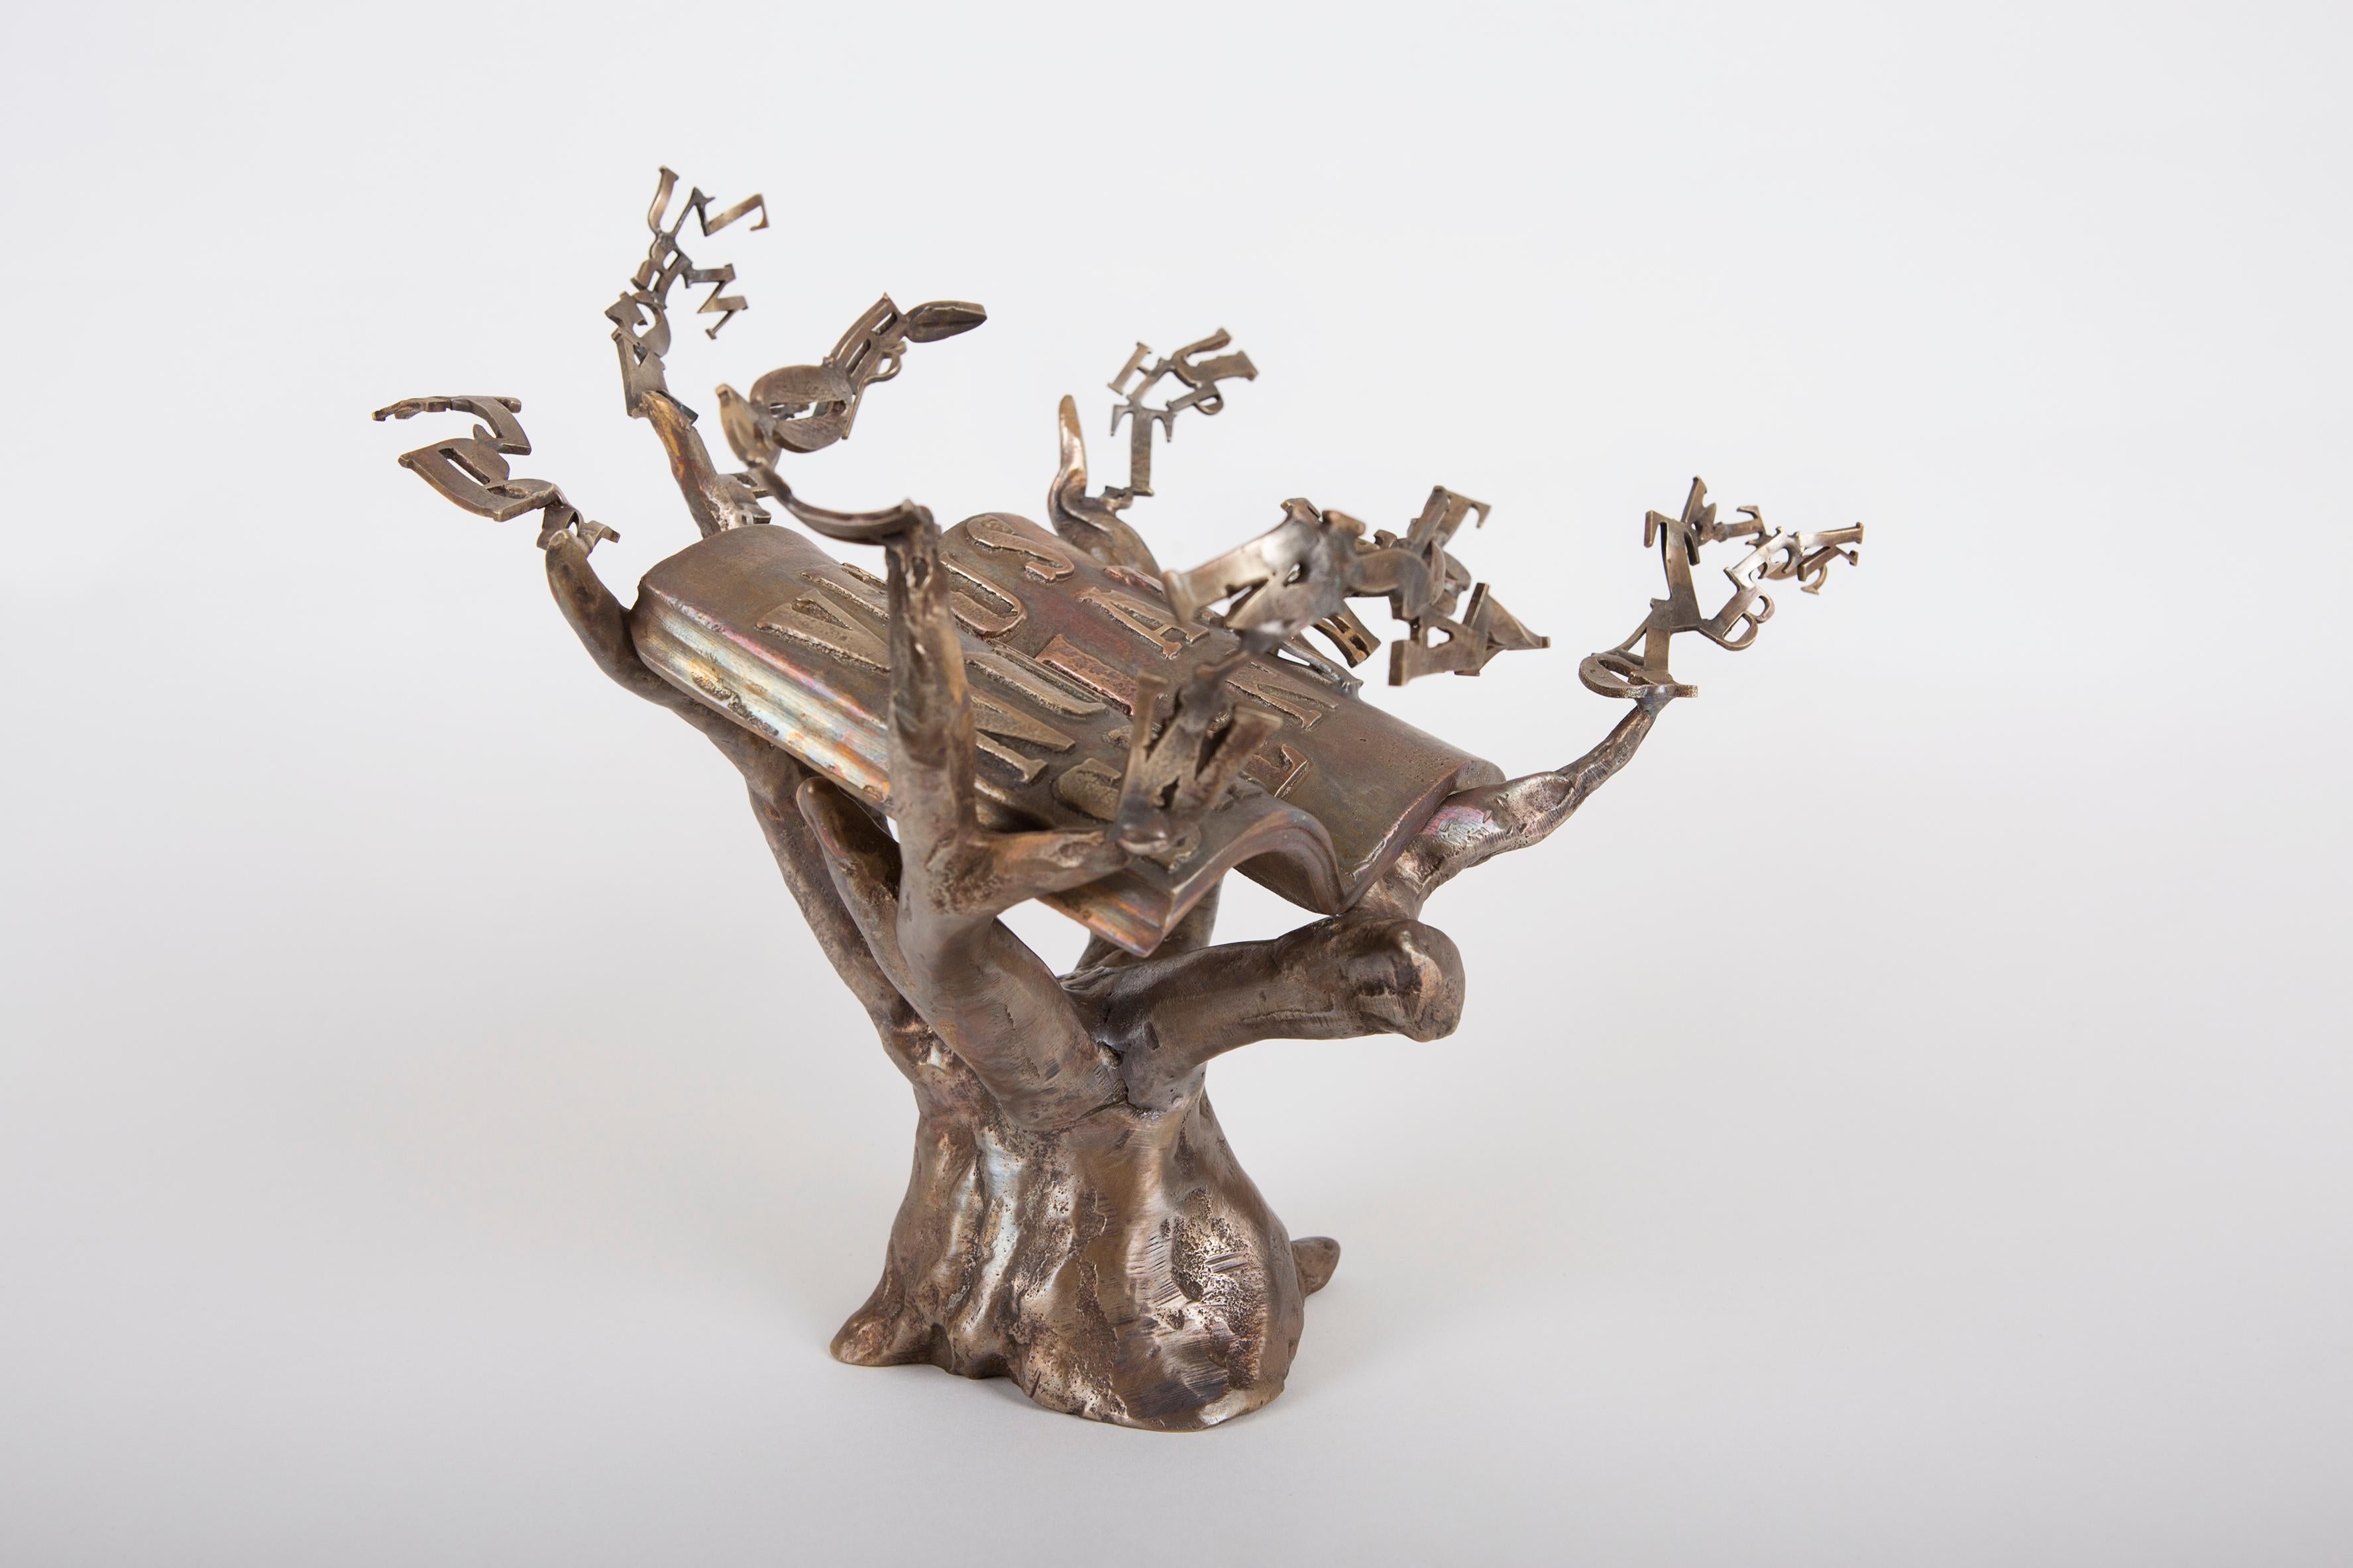 Sculpture précieuse en bronze coulé avec la technique de la cire perdue.
La célébration de la rencontre entre le passé que représente le chêne puissant, symbole de la sagesse
et l'avenir qui jaillit des feuilles transformées en lettres pour semer